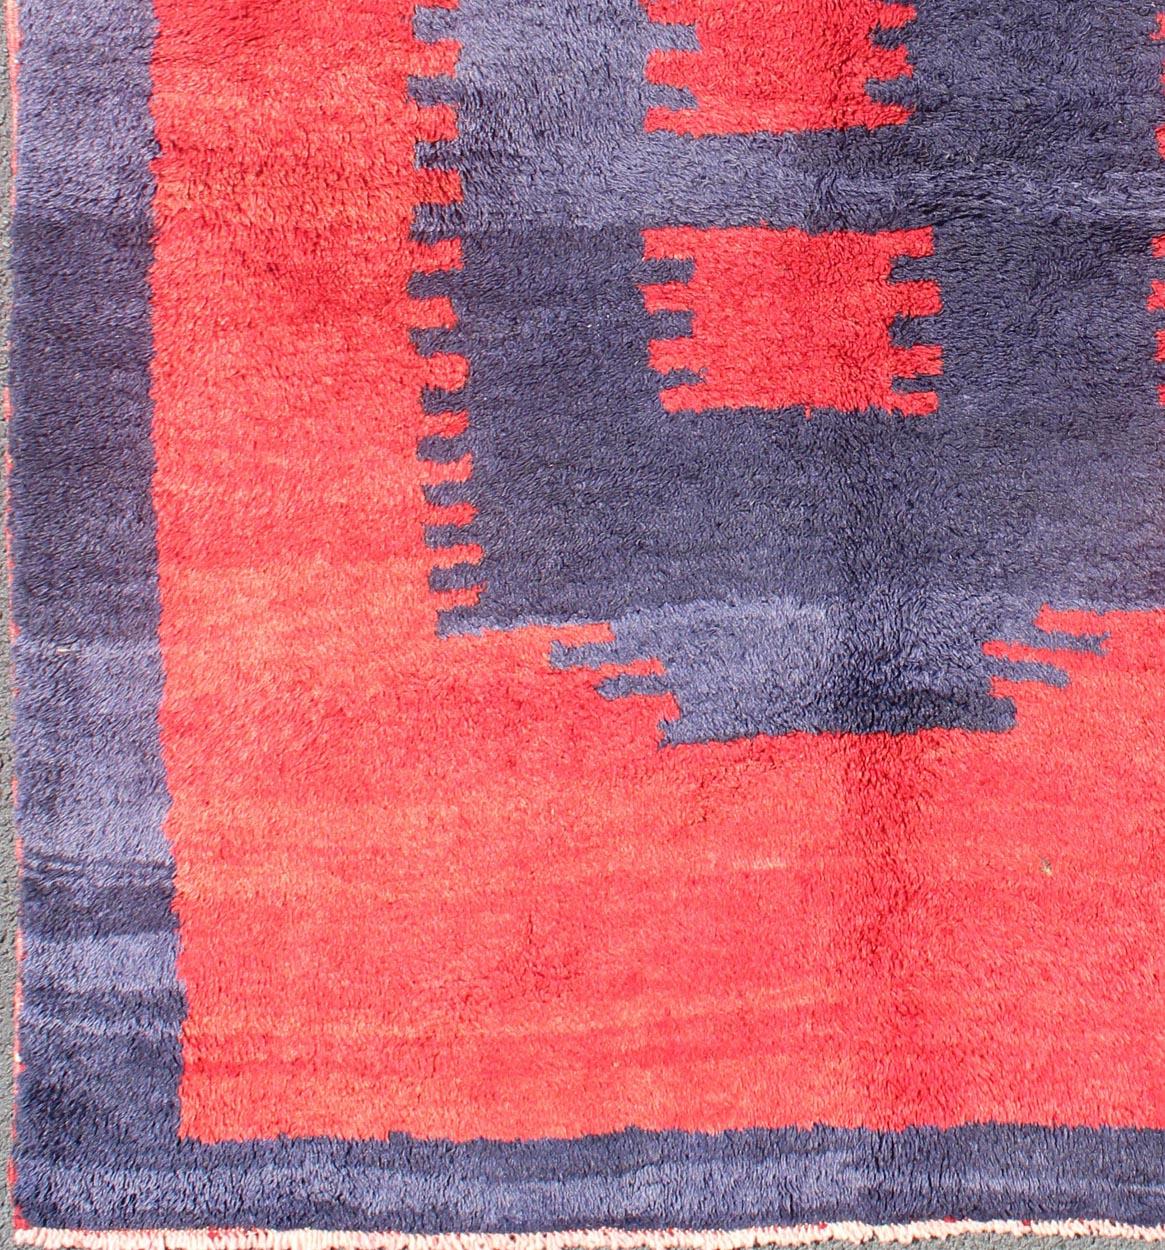   Türkischer Tulu-Teppich mit modernem, minimalistischem Design in Blau, Rot und luxuriöser Wolle.   

Maße: 4'2 x 5'5

Feine Wolle und großen Zustand türkischen Tulu Teppich mit einem modernen Design, Keivan Woven Arts / Teppich EN-3305,